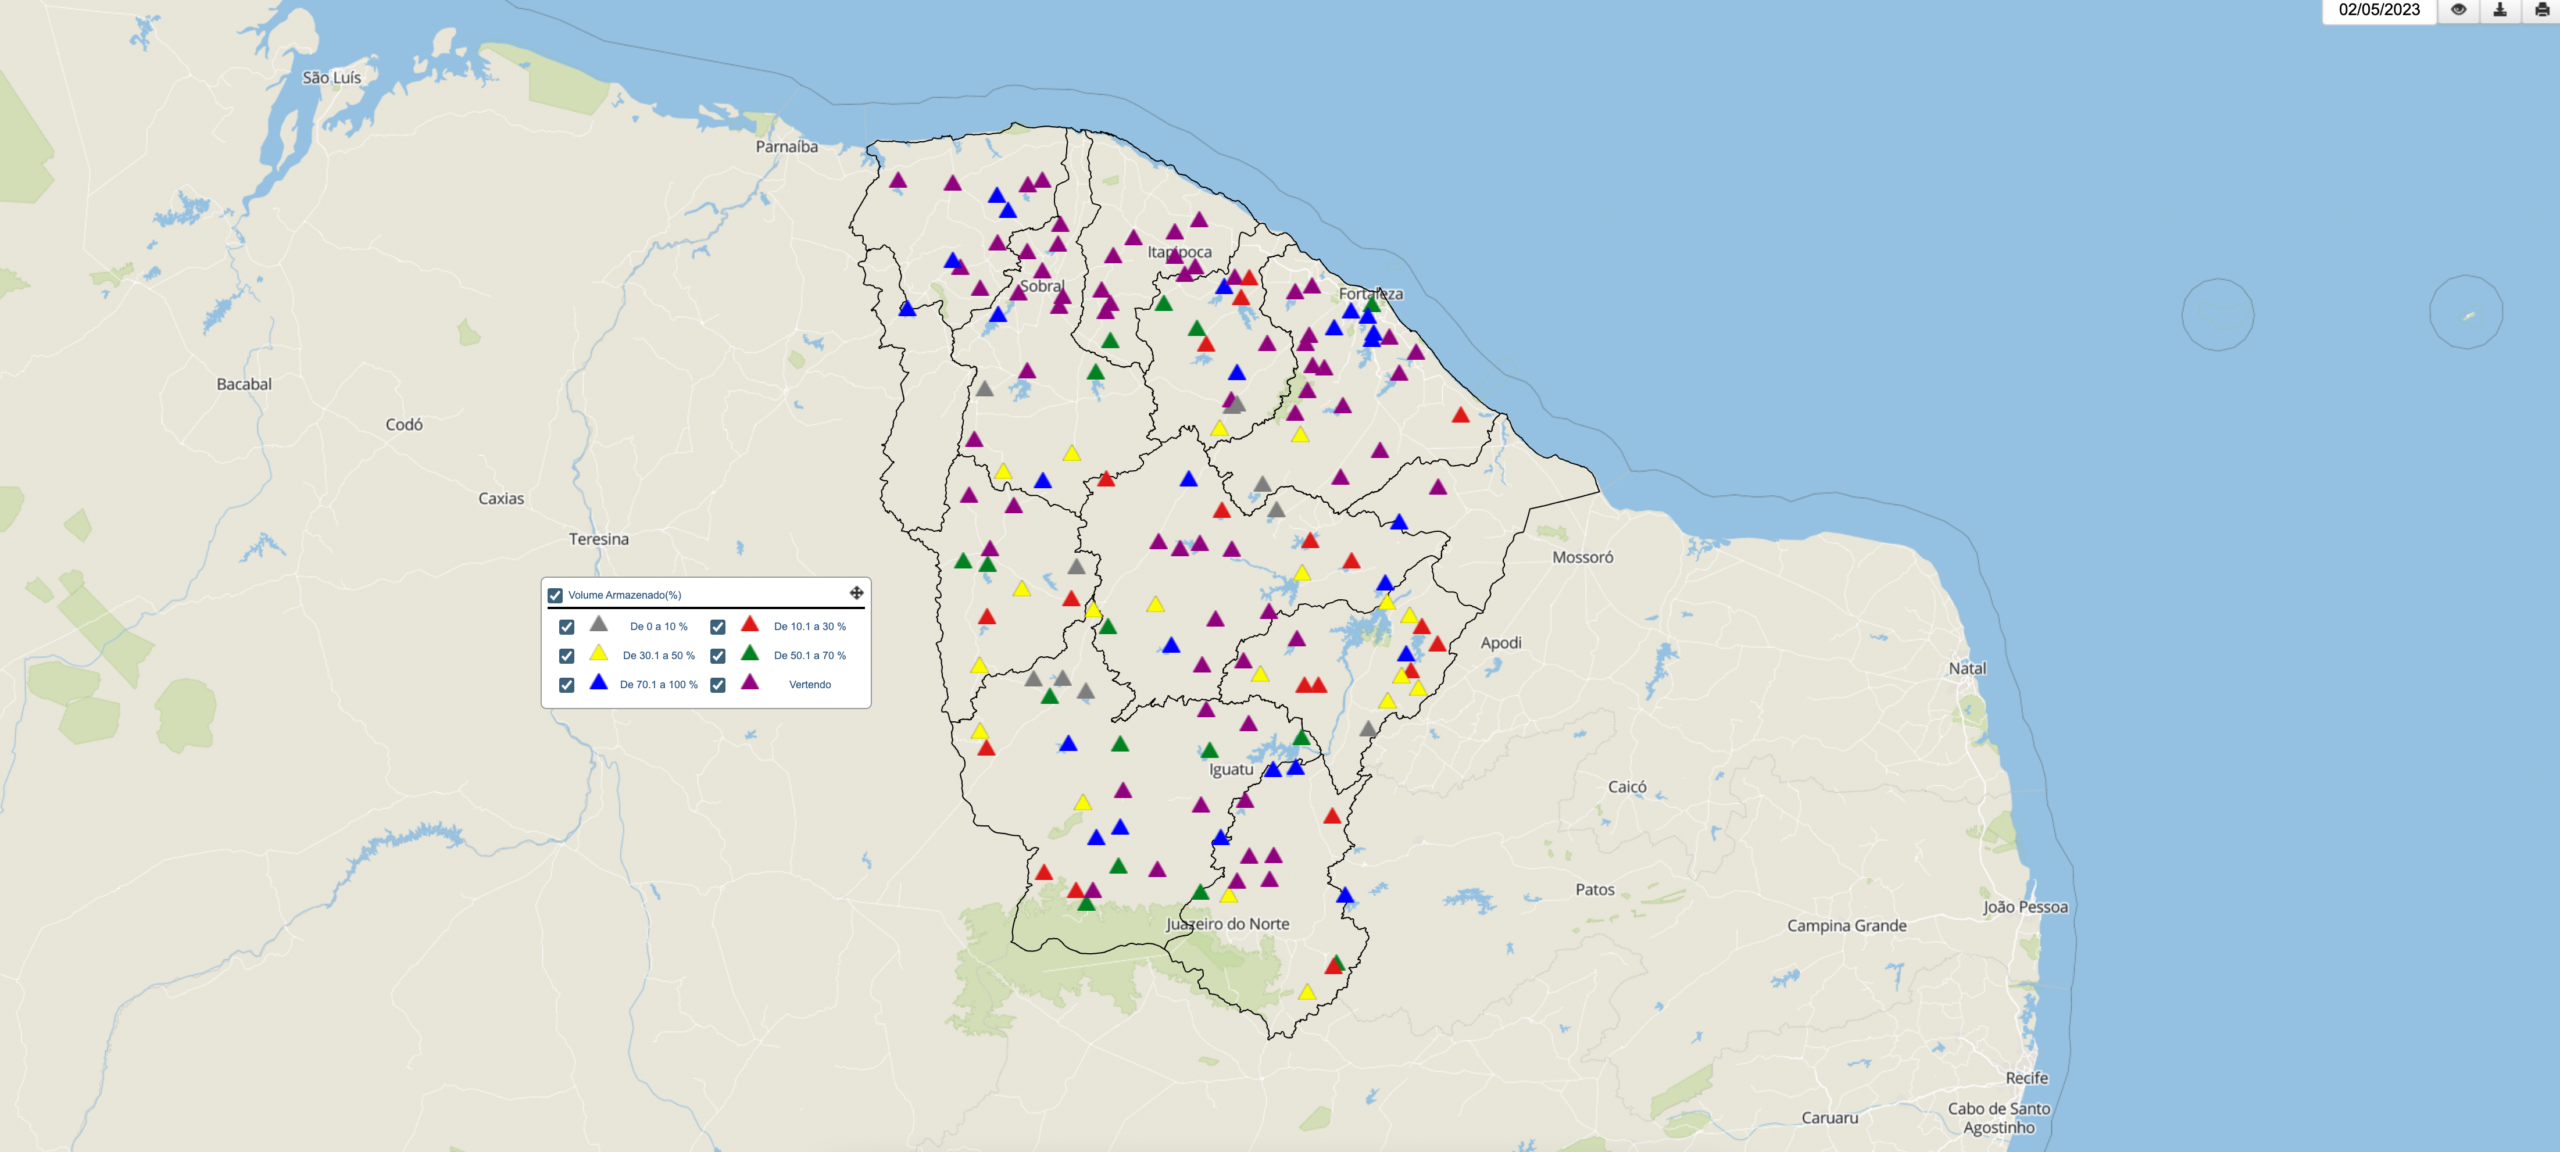 Mapa do Ceará com pontos coloridos que indicam o volume dos reservatórios.